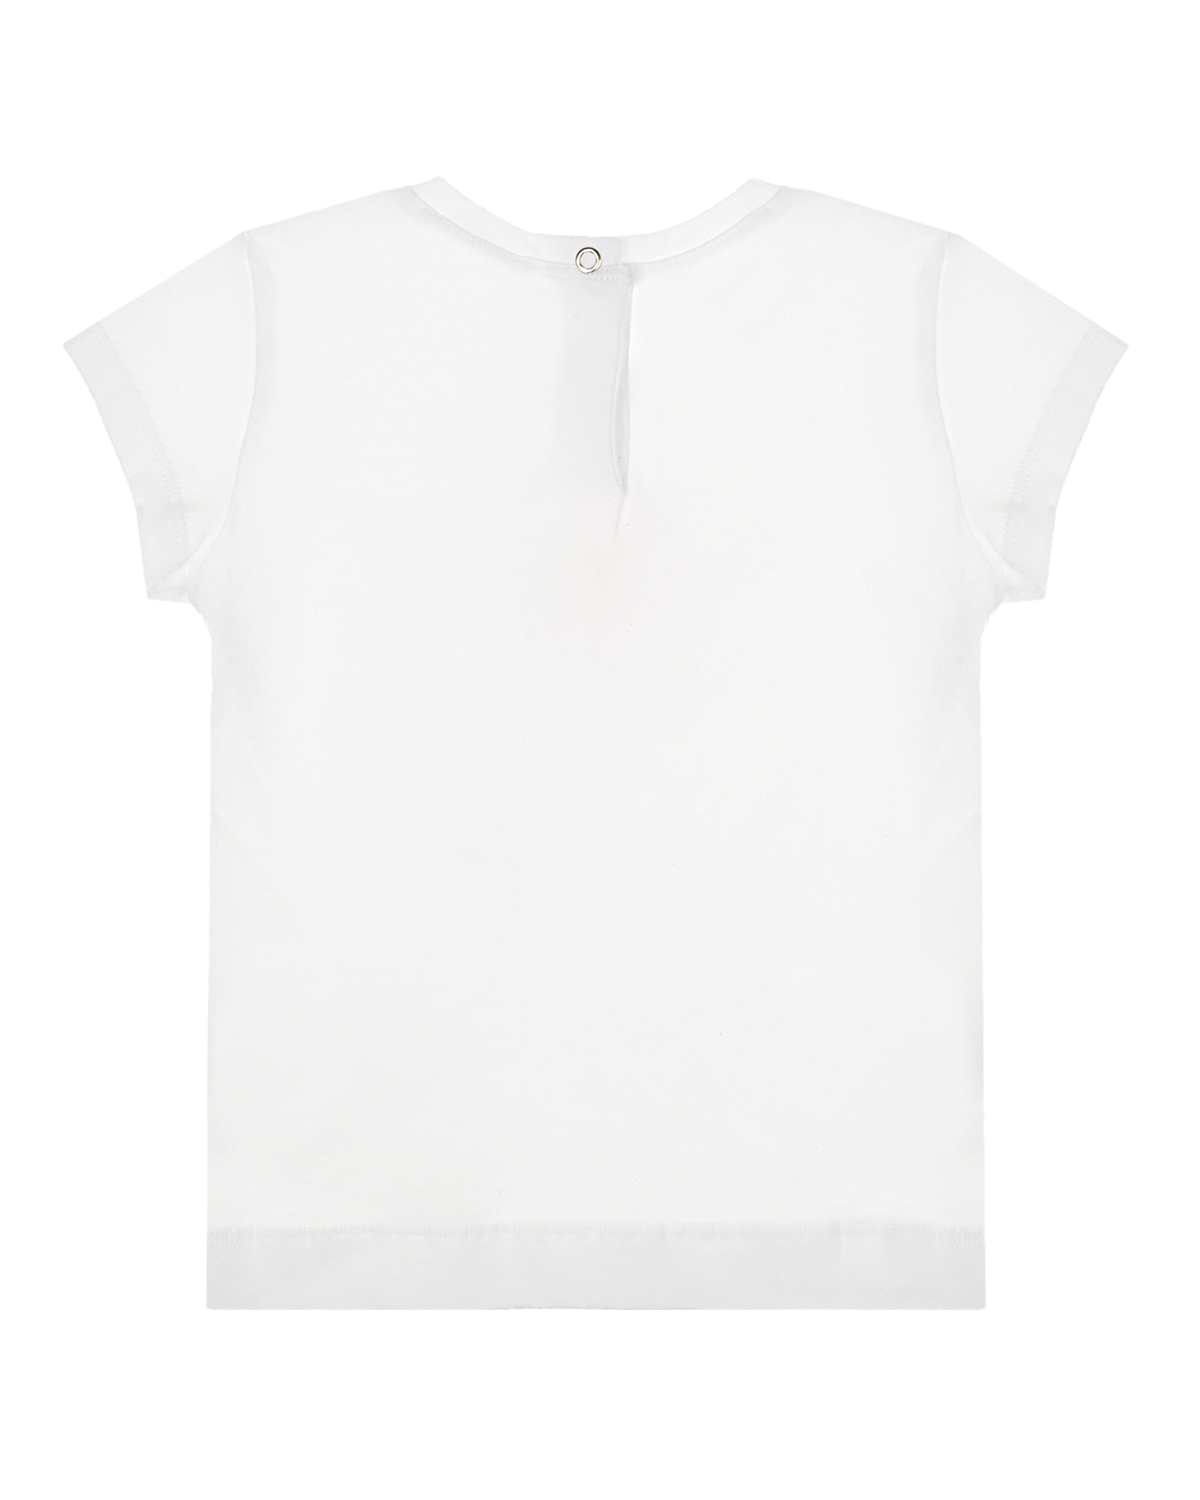 Белая футболка с принтом "with Love" Monnalisa детская, размер 86, цвет белый - фото 2